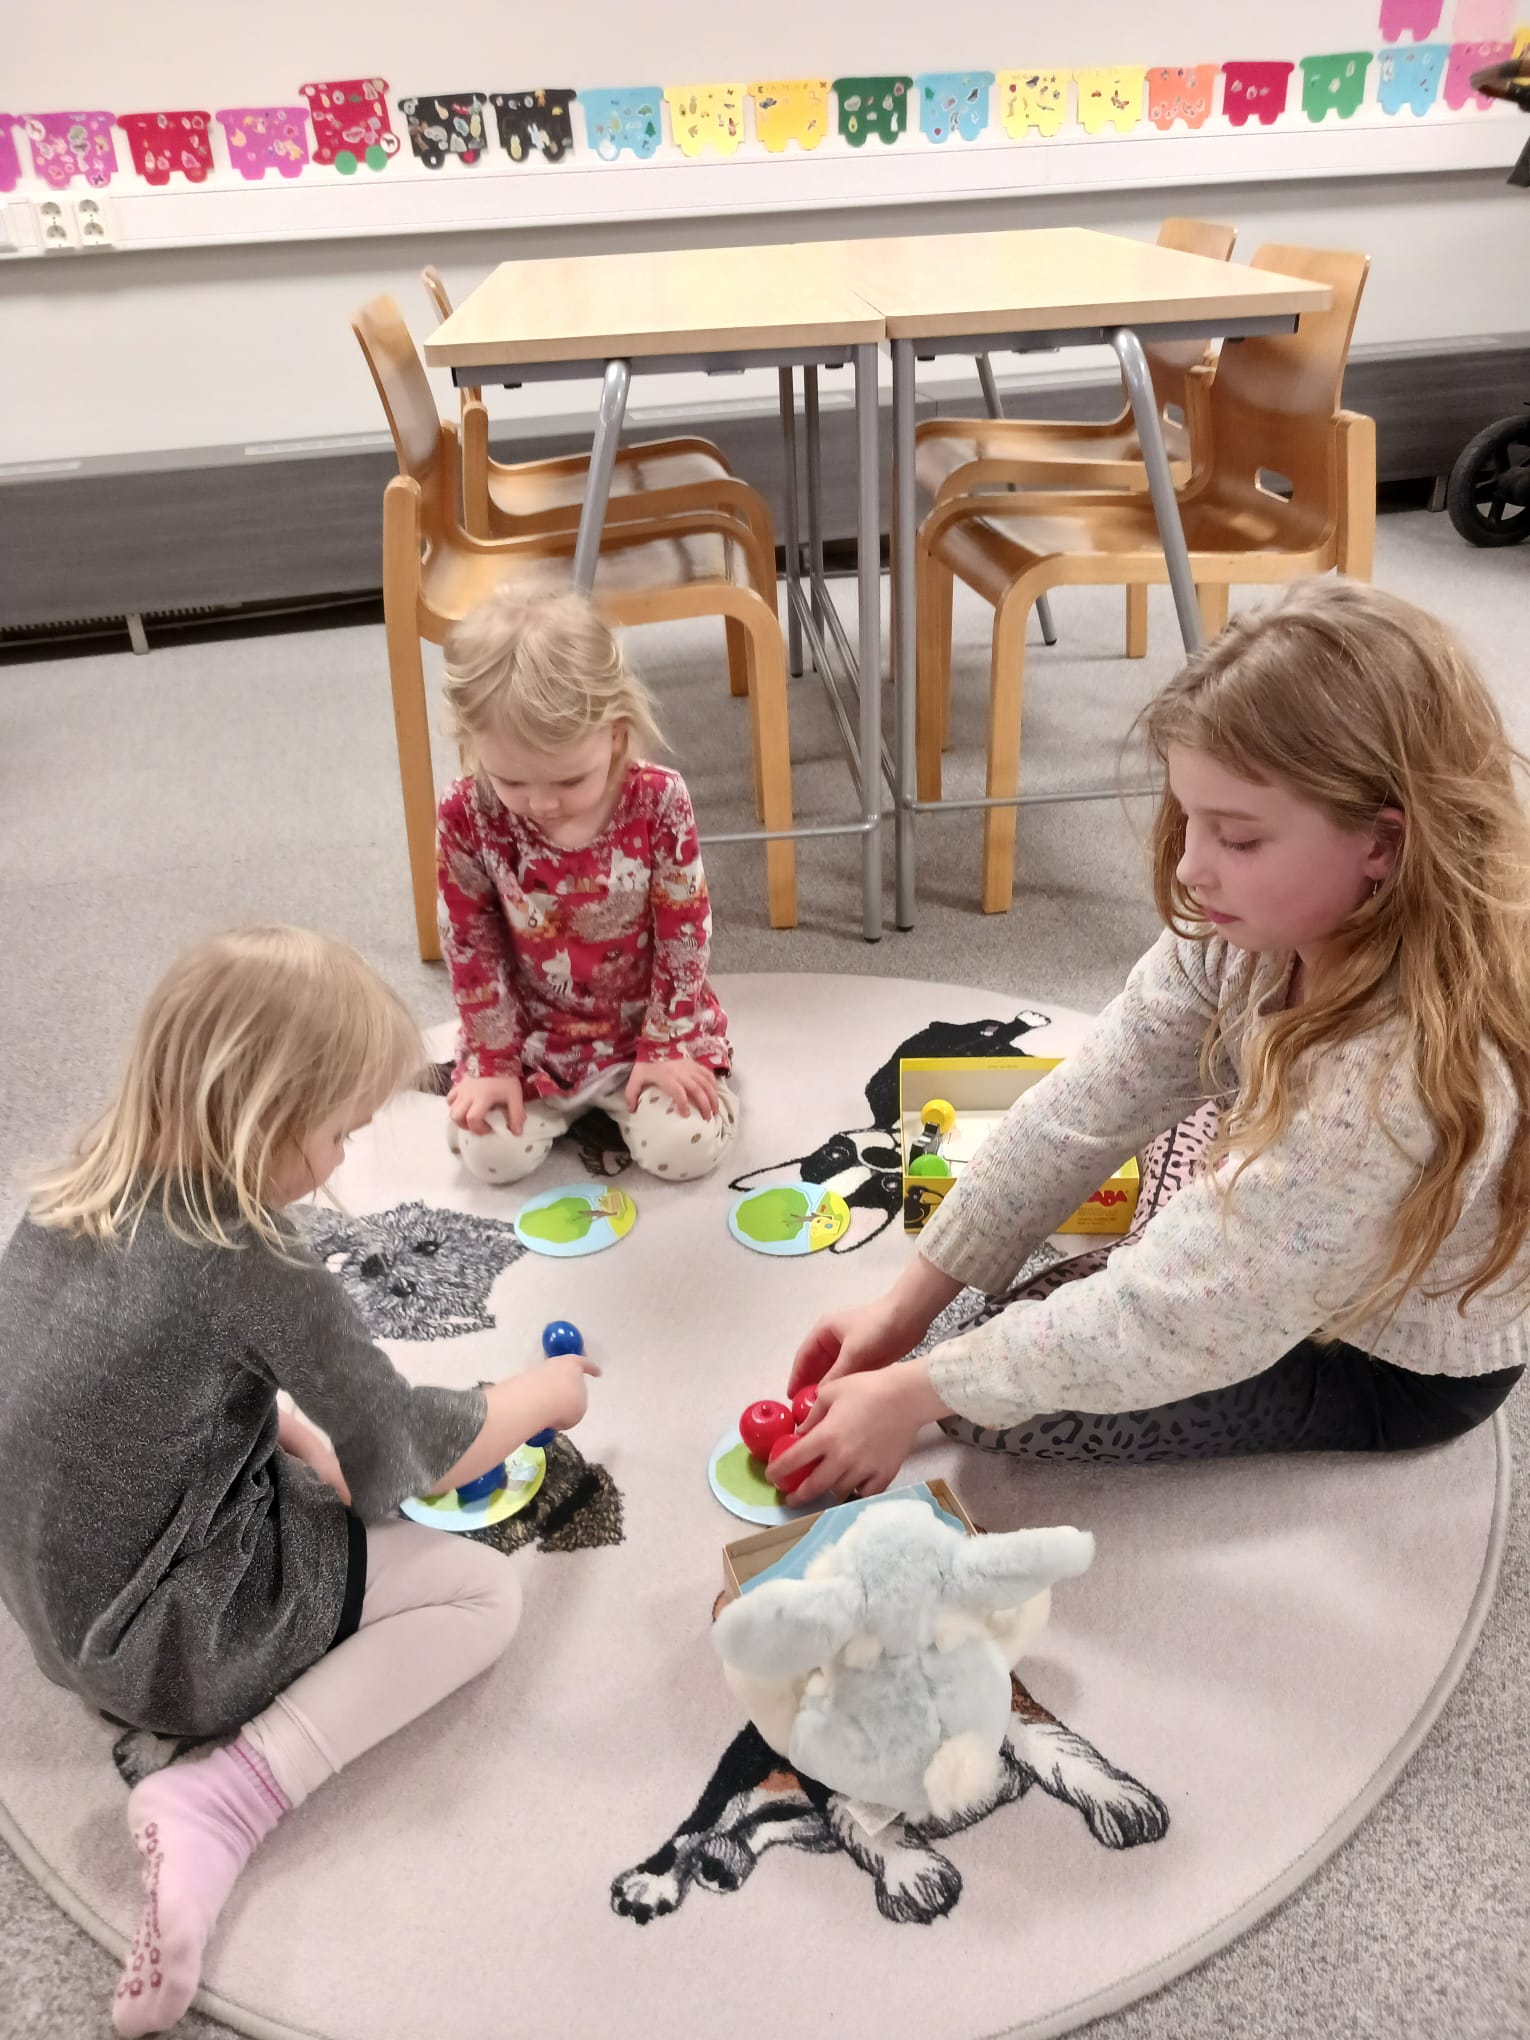 Kolme lasta pelaa lattialla.